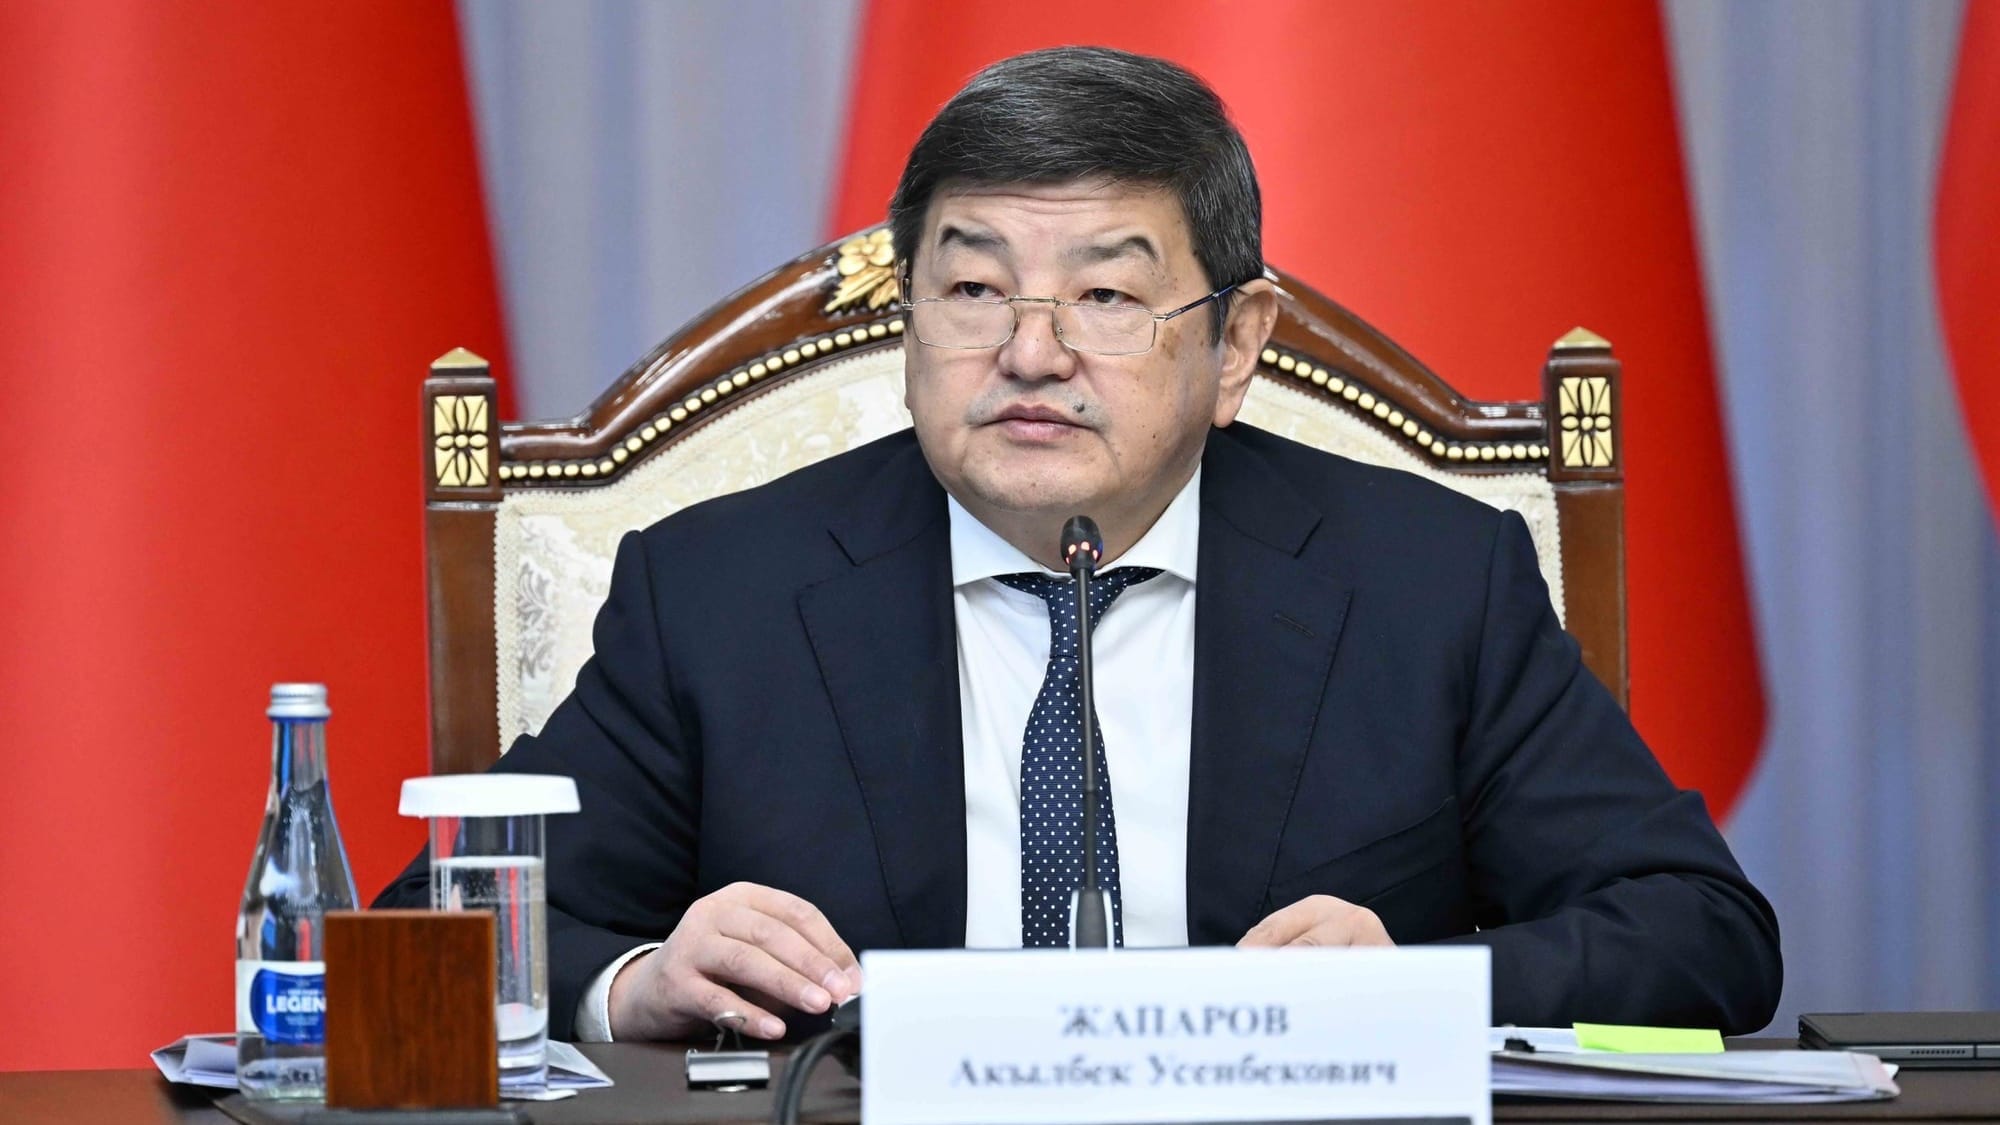 Кыргызстан не боится санкций – Акылбек Жапаров о прекращении обслуживания карт «Мир»